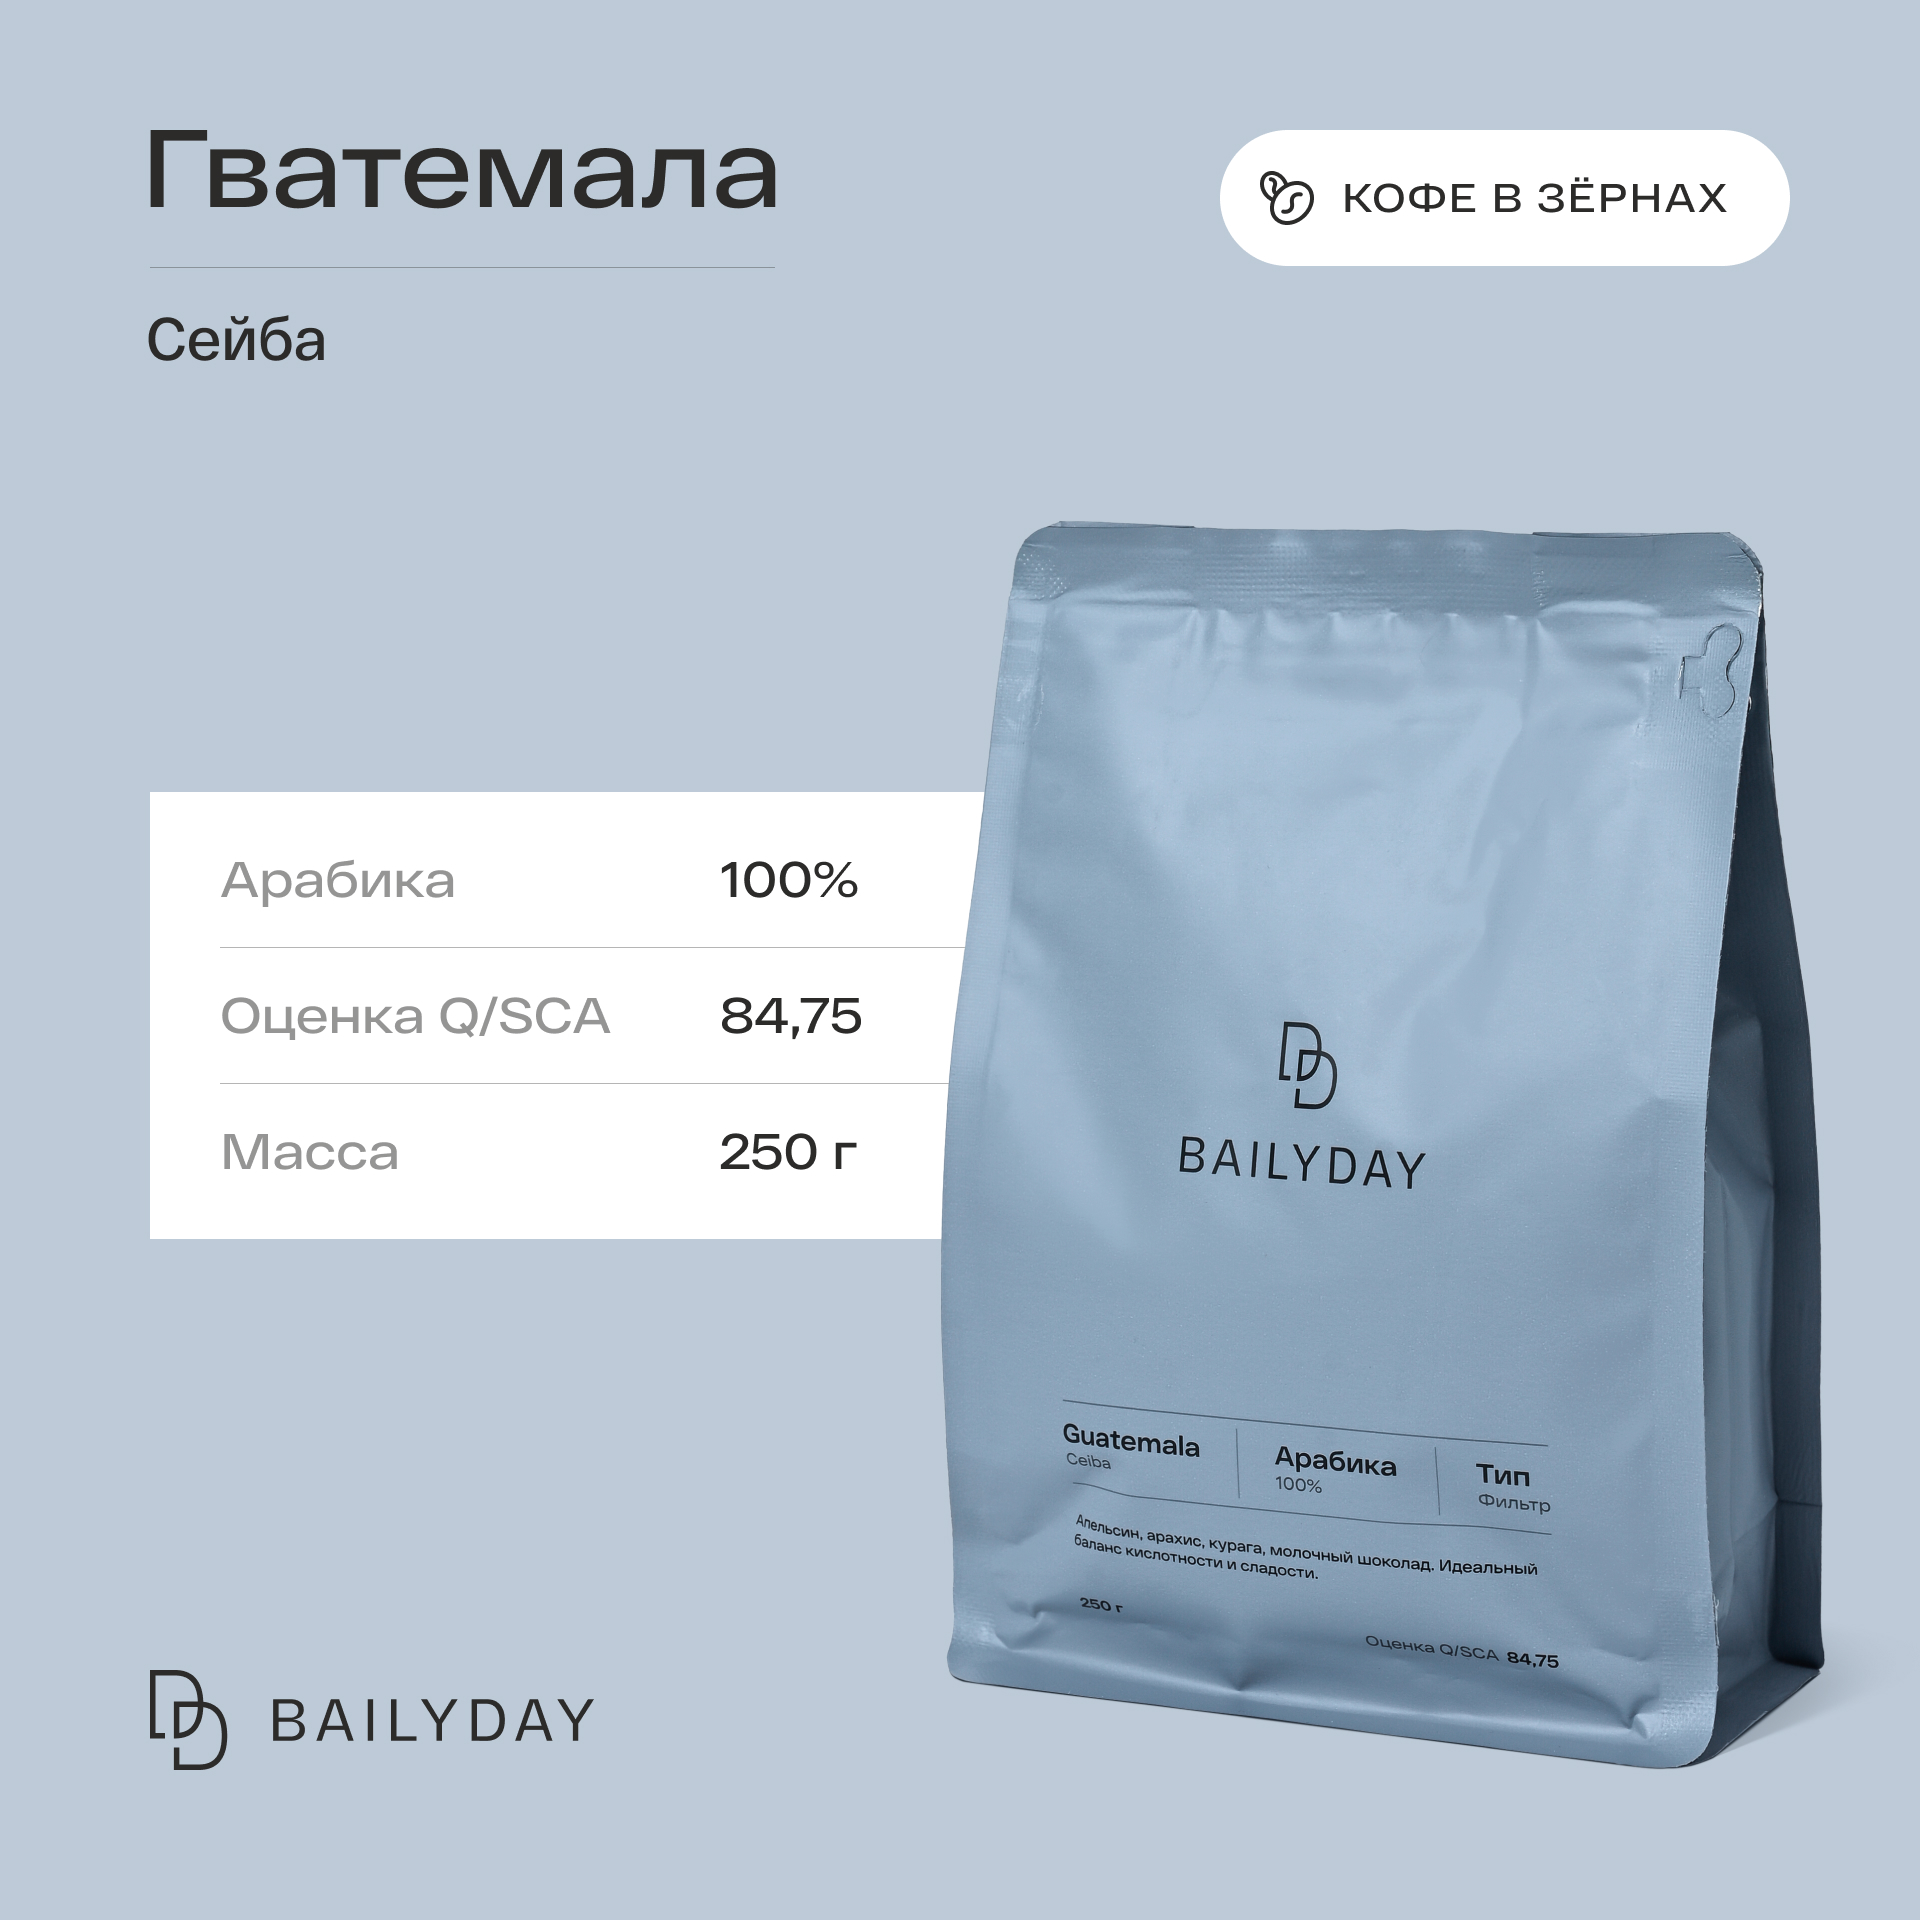 Кофе в зернах Bailyday Гватемала Сейба Bailyday 100% арабика обжарка под фильтр, 250 г